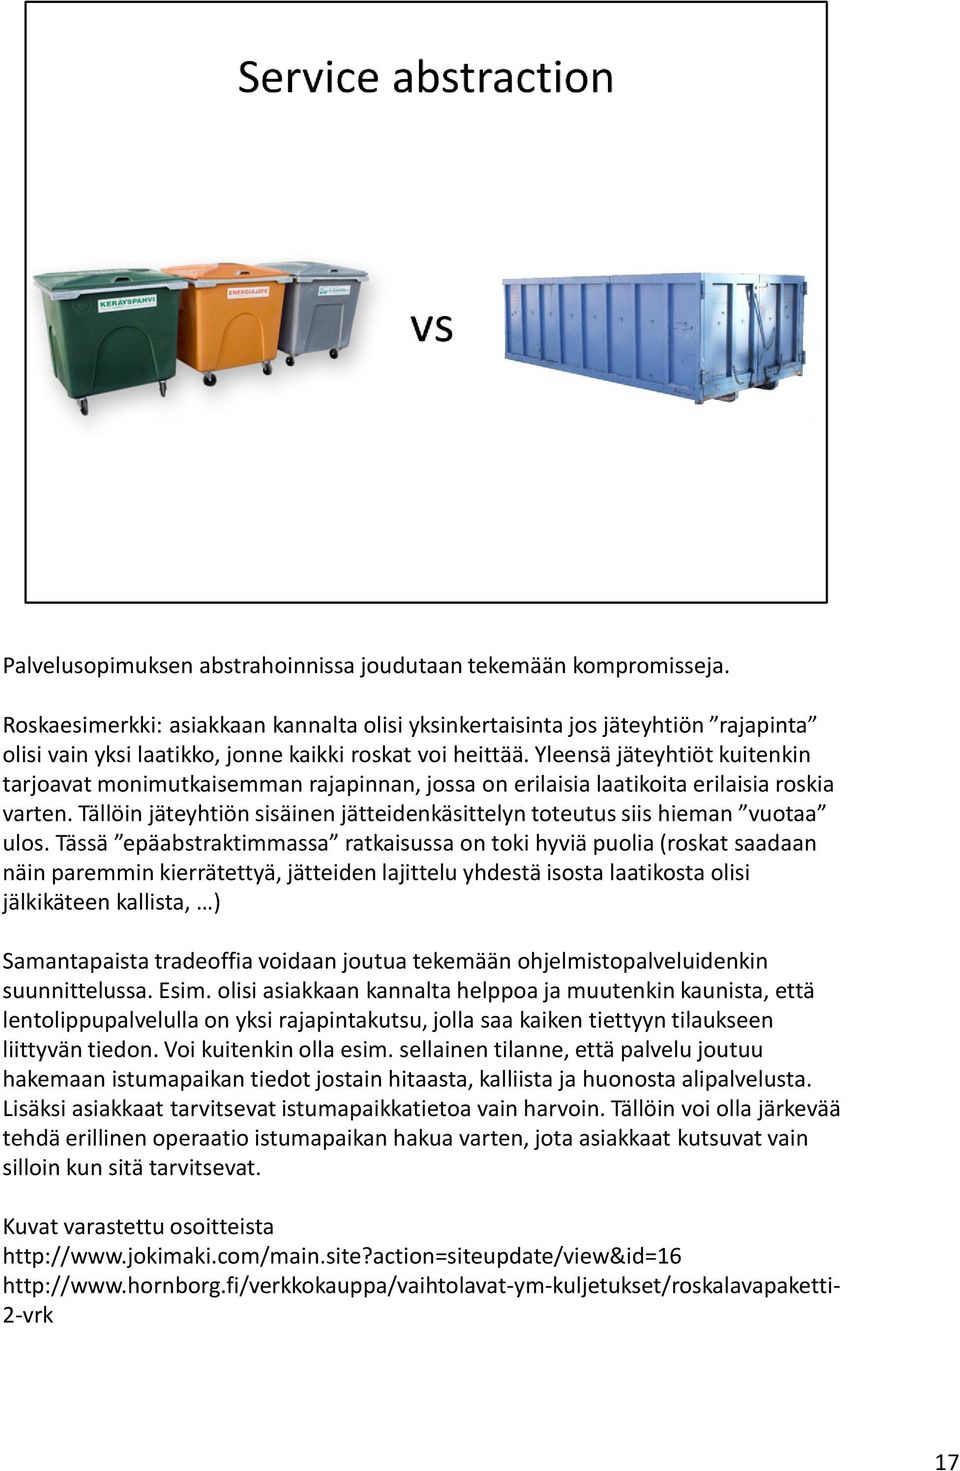 Yleensä jäteyhtiöt kuitenkin tarjoavat monimutkaisemman rajapinnan, jossa on erilaisia laatikoita erilaisia roskia varten.